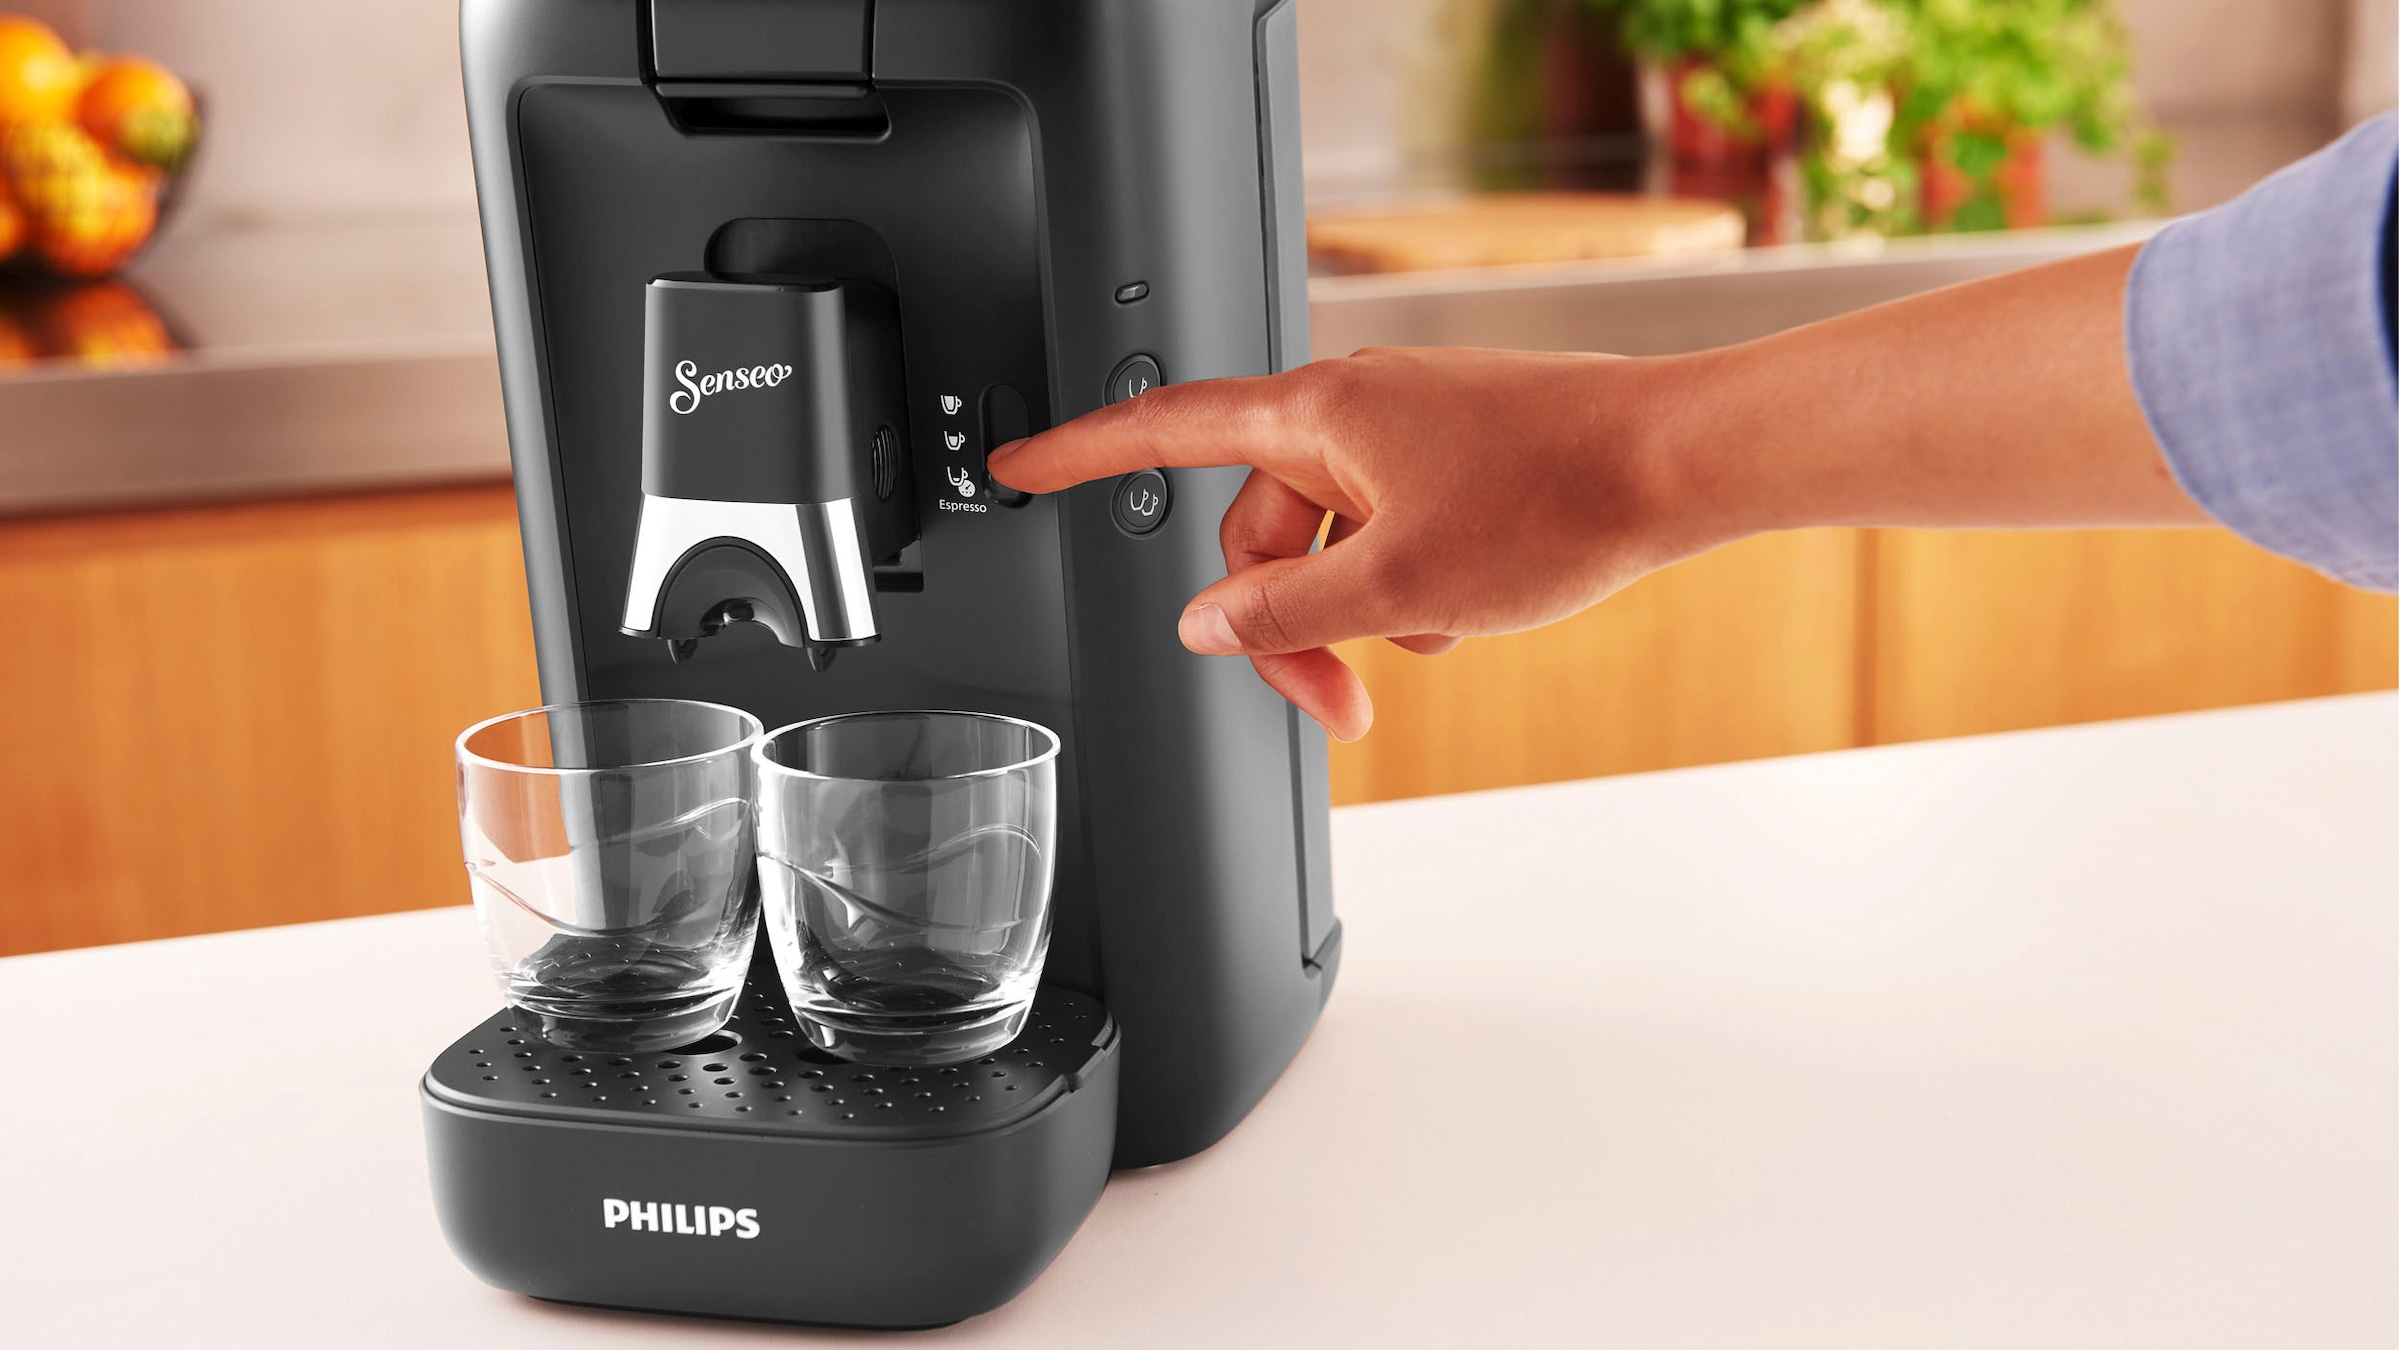 Philips Senseo Kaffeepadmaschine »Maestro CSA260/60, aus 80% recyceltem  Plastik, +3 Kaffeespezialitäten«, Memo-Funktion, inkl. Gratis-Zugaben im  Wert von € 14,- UVP online kaufen